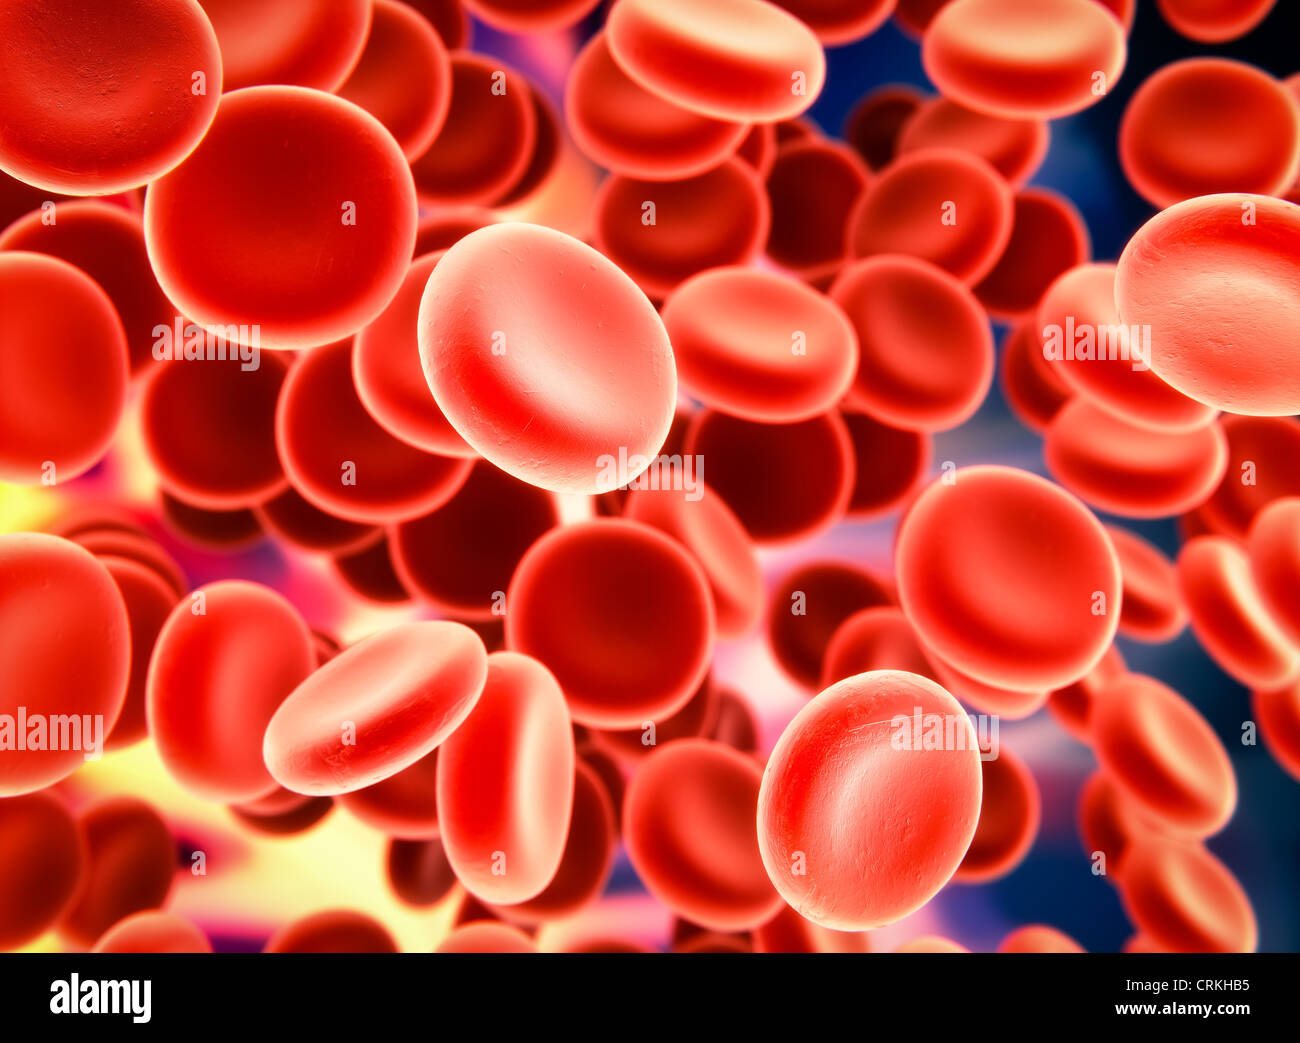 Le cellule del sangue - Microscopia elettronica a scansione illustrazione stilizzata Foto Stock